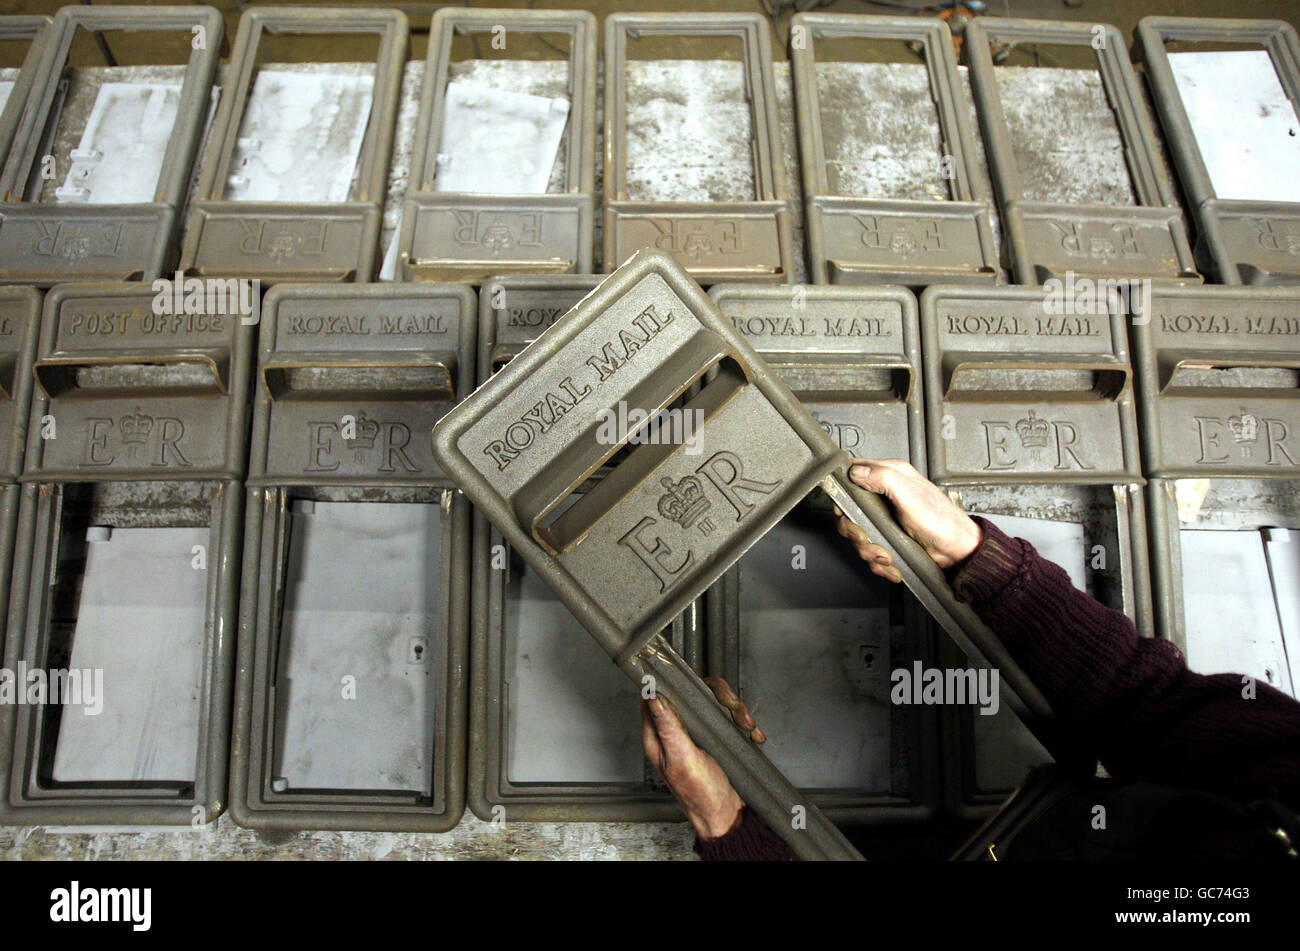 John Cooper, 69, der seit seinem 15. Lebensjahr Briefkästen mit den Frontplatten der Royal Mail Lampenboxen bei Machan Engineering in Denny herstellt. Machans ist das einzige Unternehmen in Großbritannien, das den Briefkasten für die Royal Mail herstellt. Stockfoto